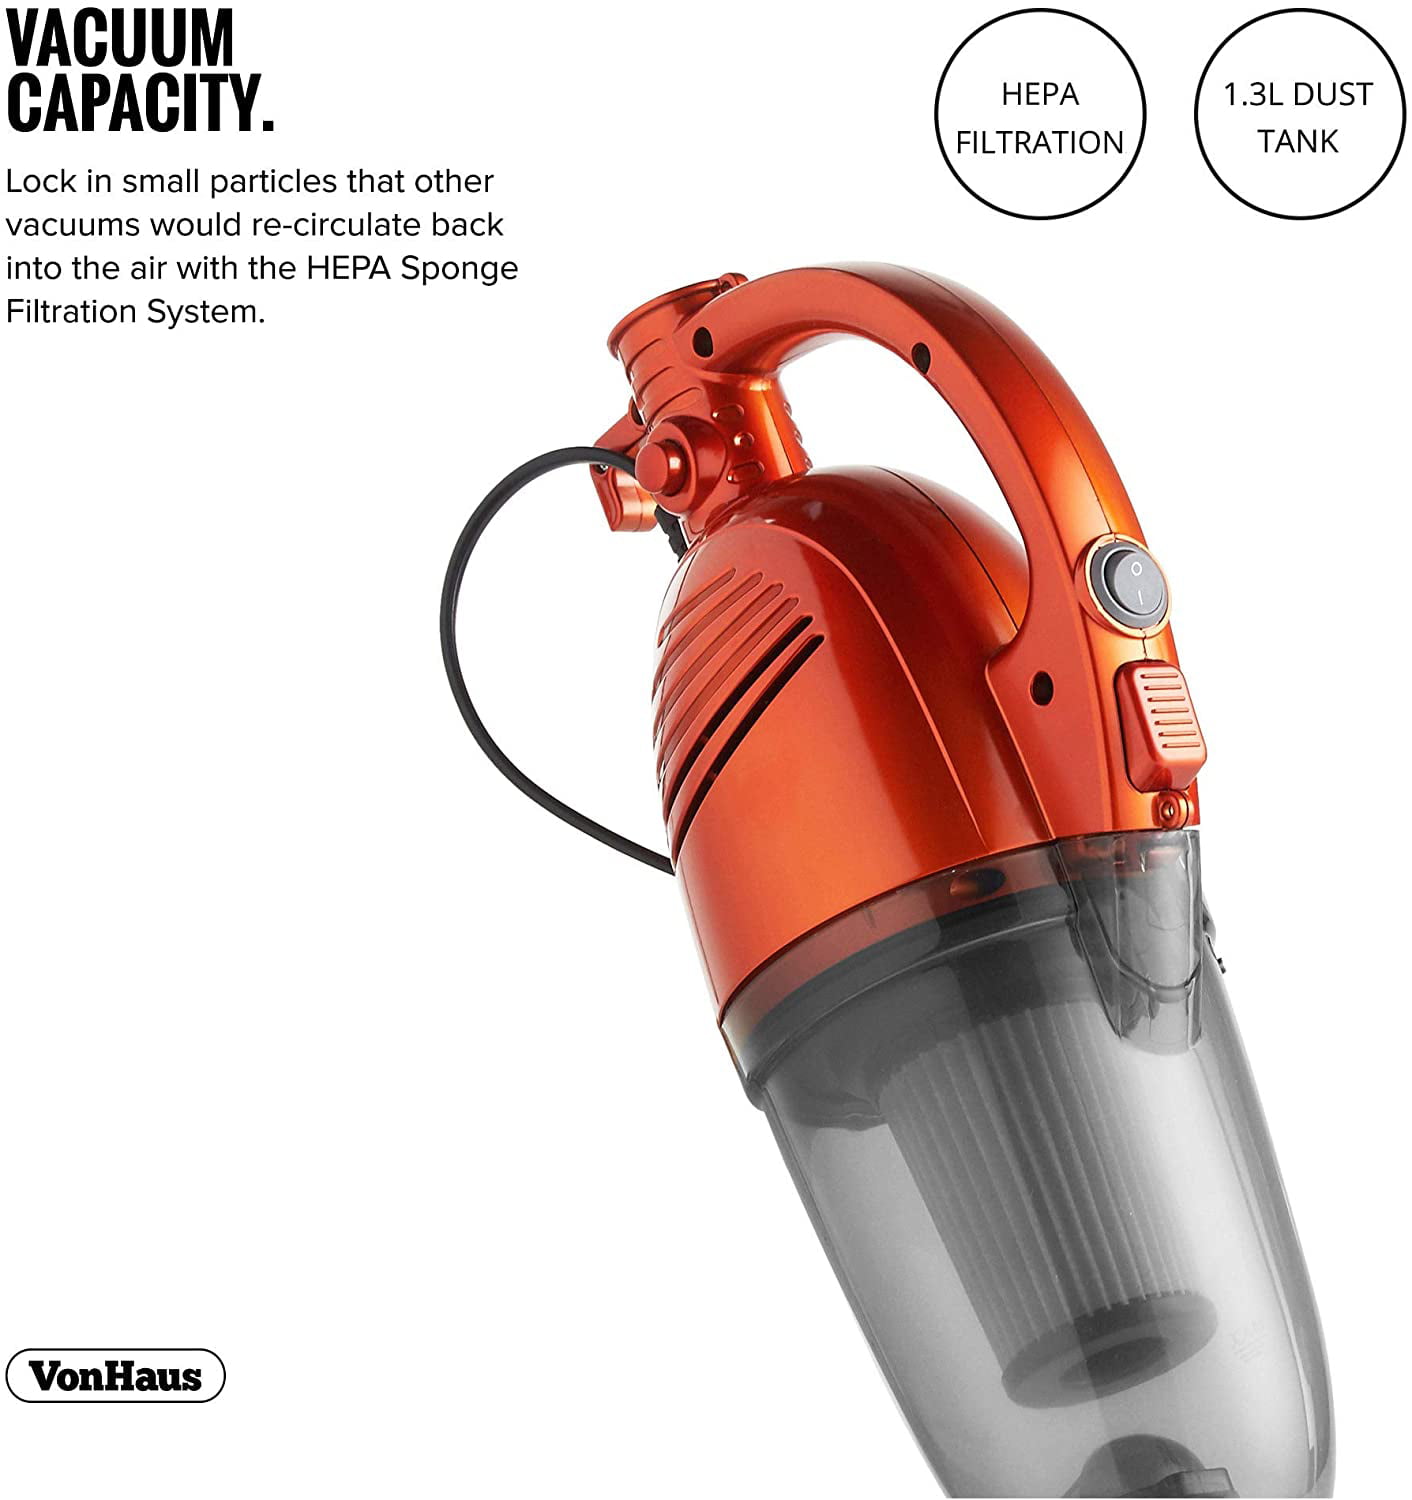 VonHaus 600W 2 in 1 Stick & Handheld Vacuum Cleaner Corded Lightweight Upright 